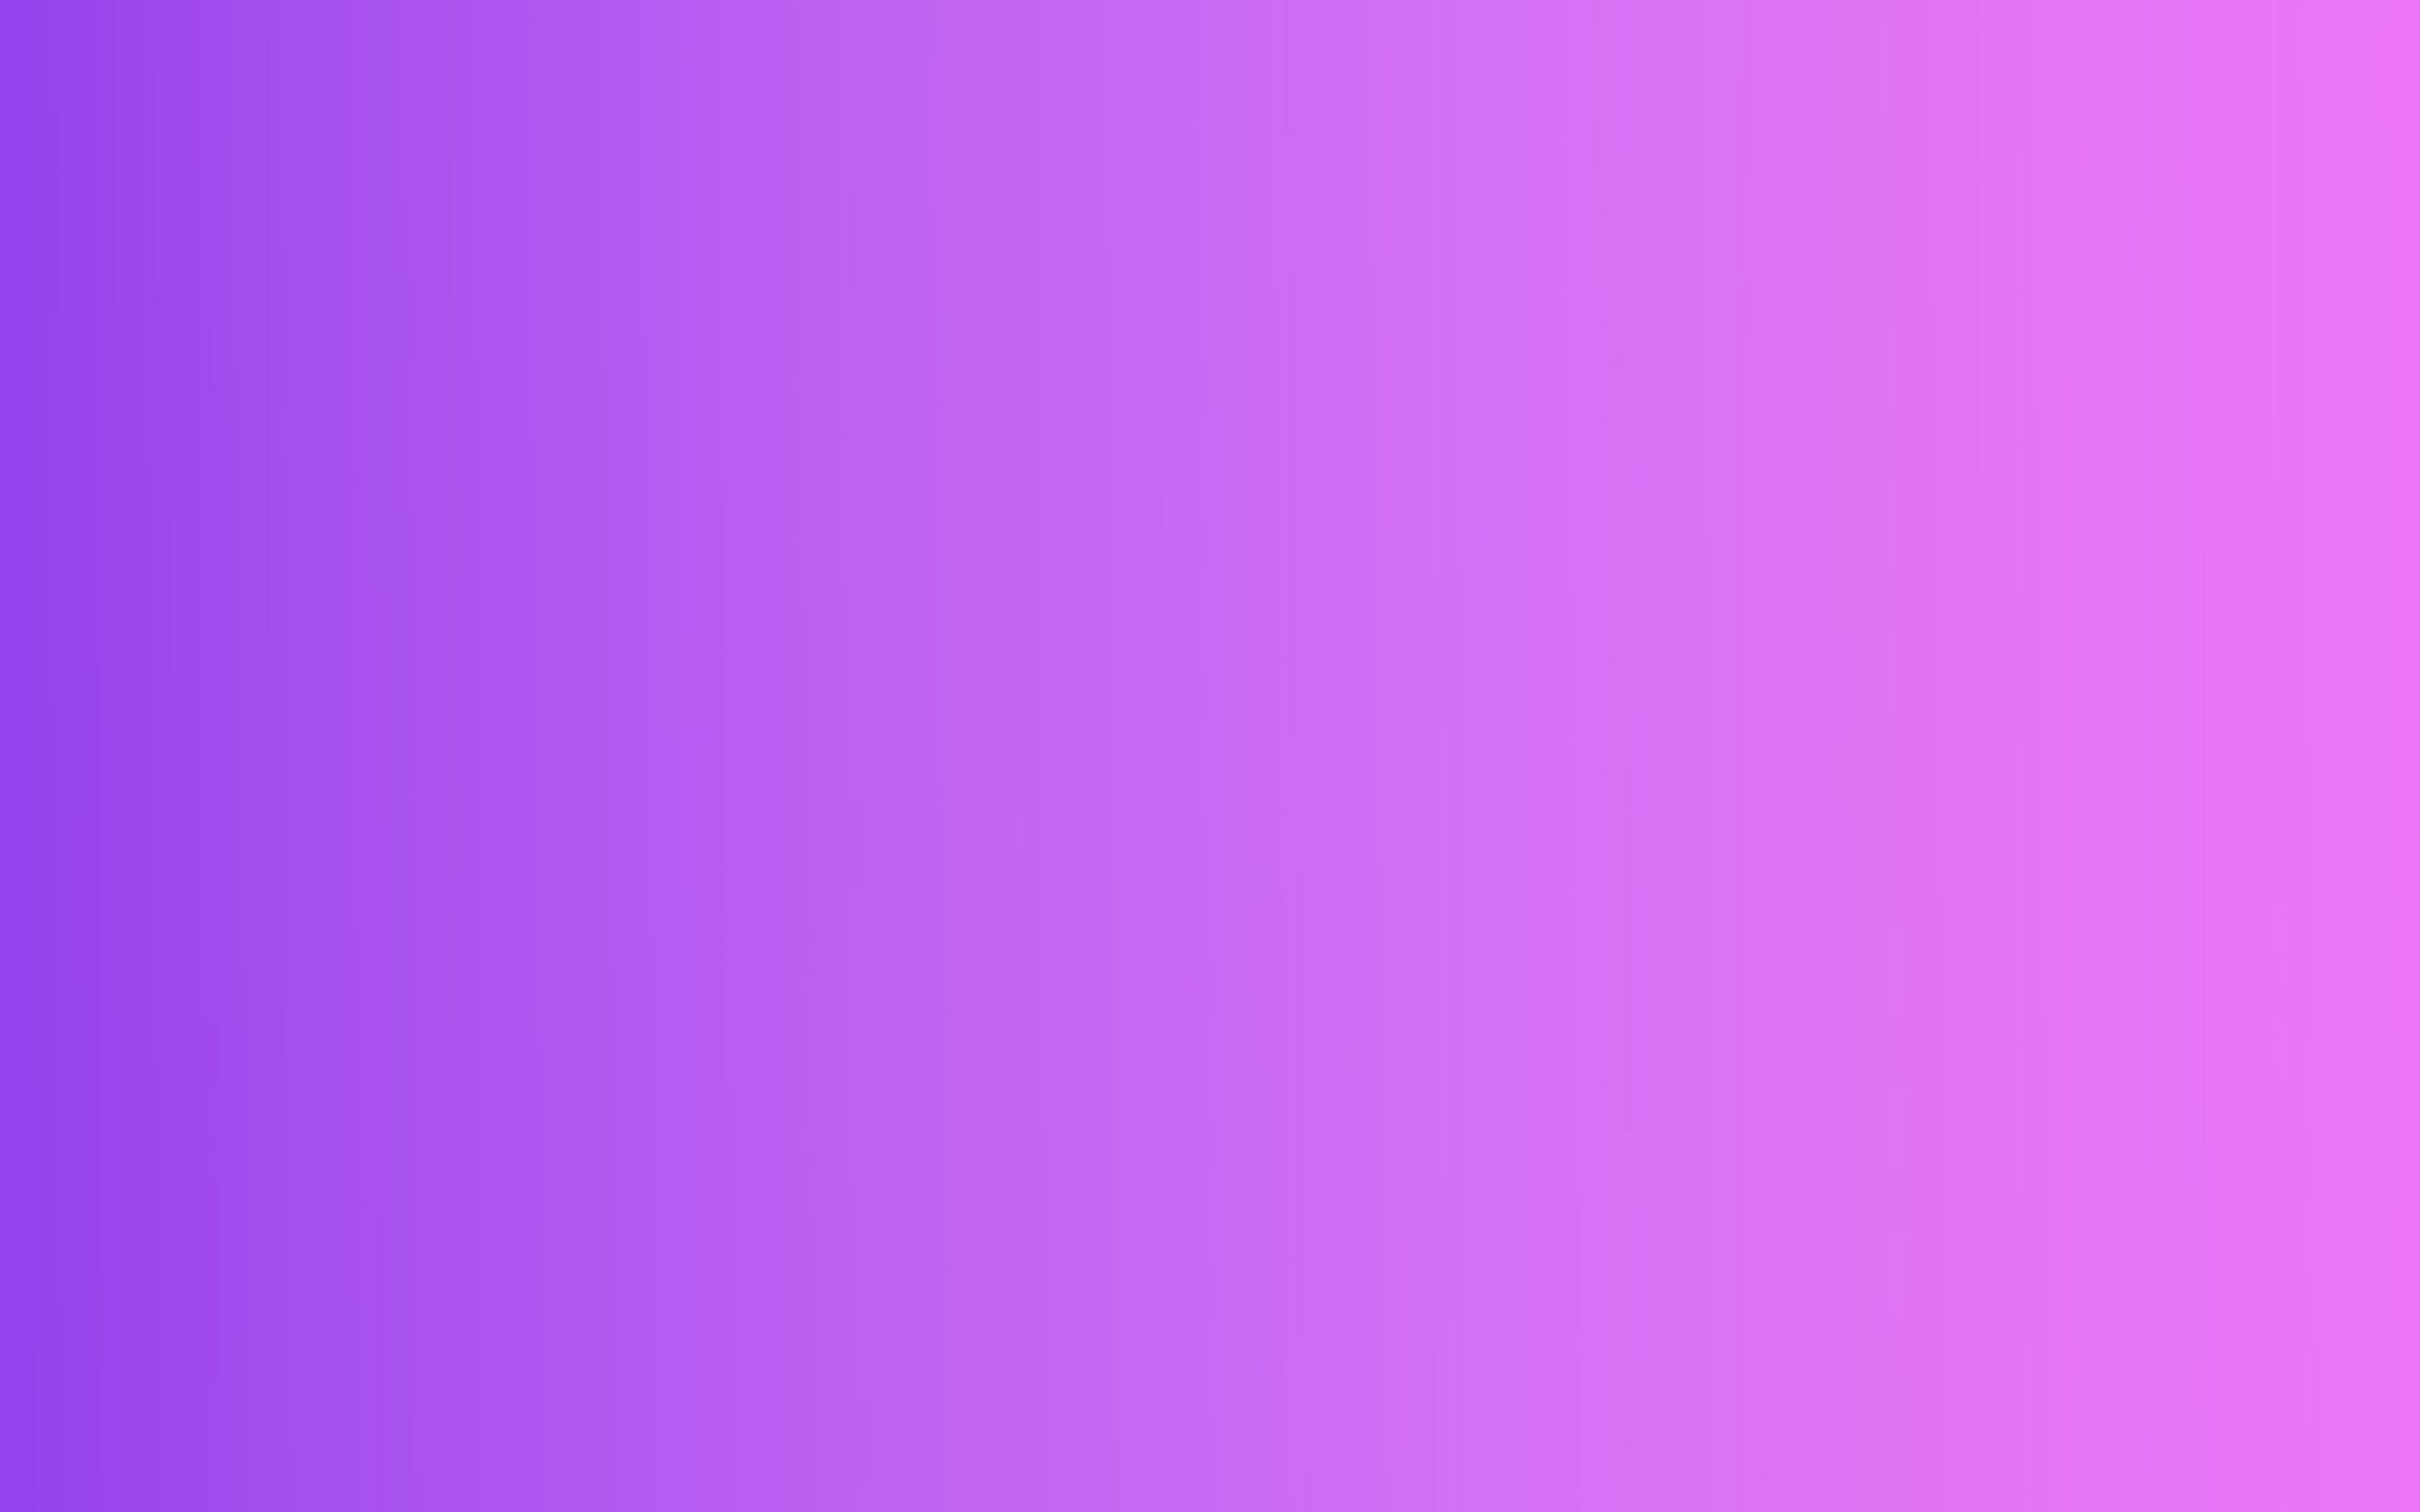 Hình nền Gradient Pink Purple Background có thể giúp bạn tăng cường sự cá tính của mình và đưa ra một thông điệp riêng về bản thân. Chúng tôi tin rằng việc sử dụng hình nền này sẽ đem lại sự yêu thích cho bạn mỗi khi sử dụng thiết bị của mình.